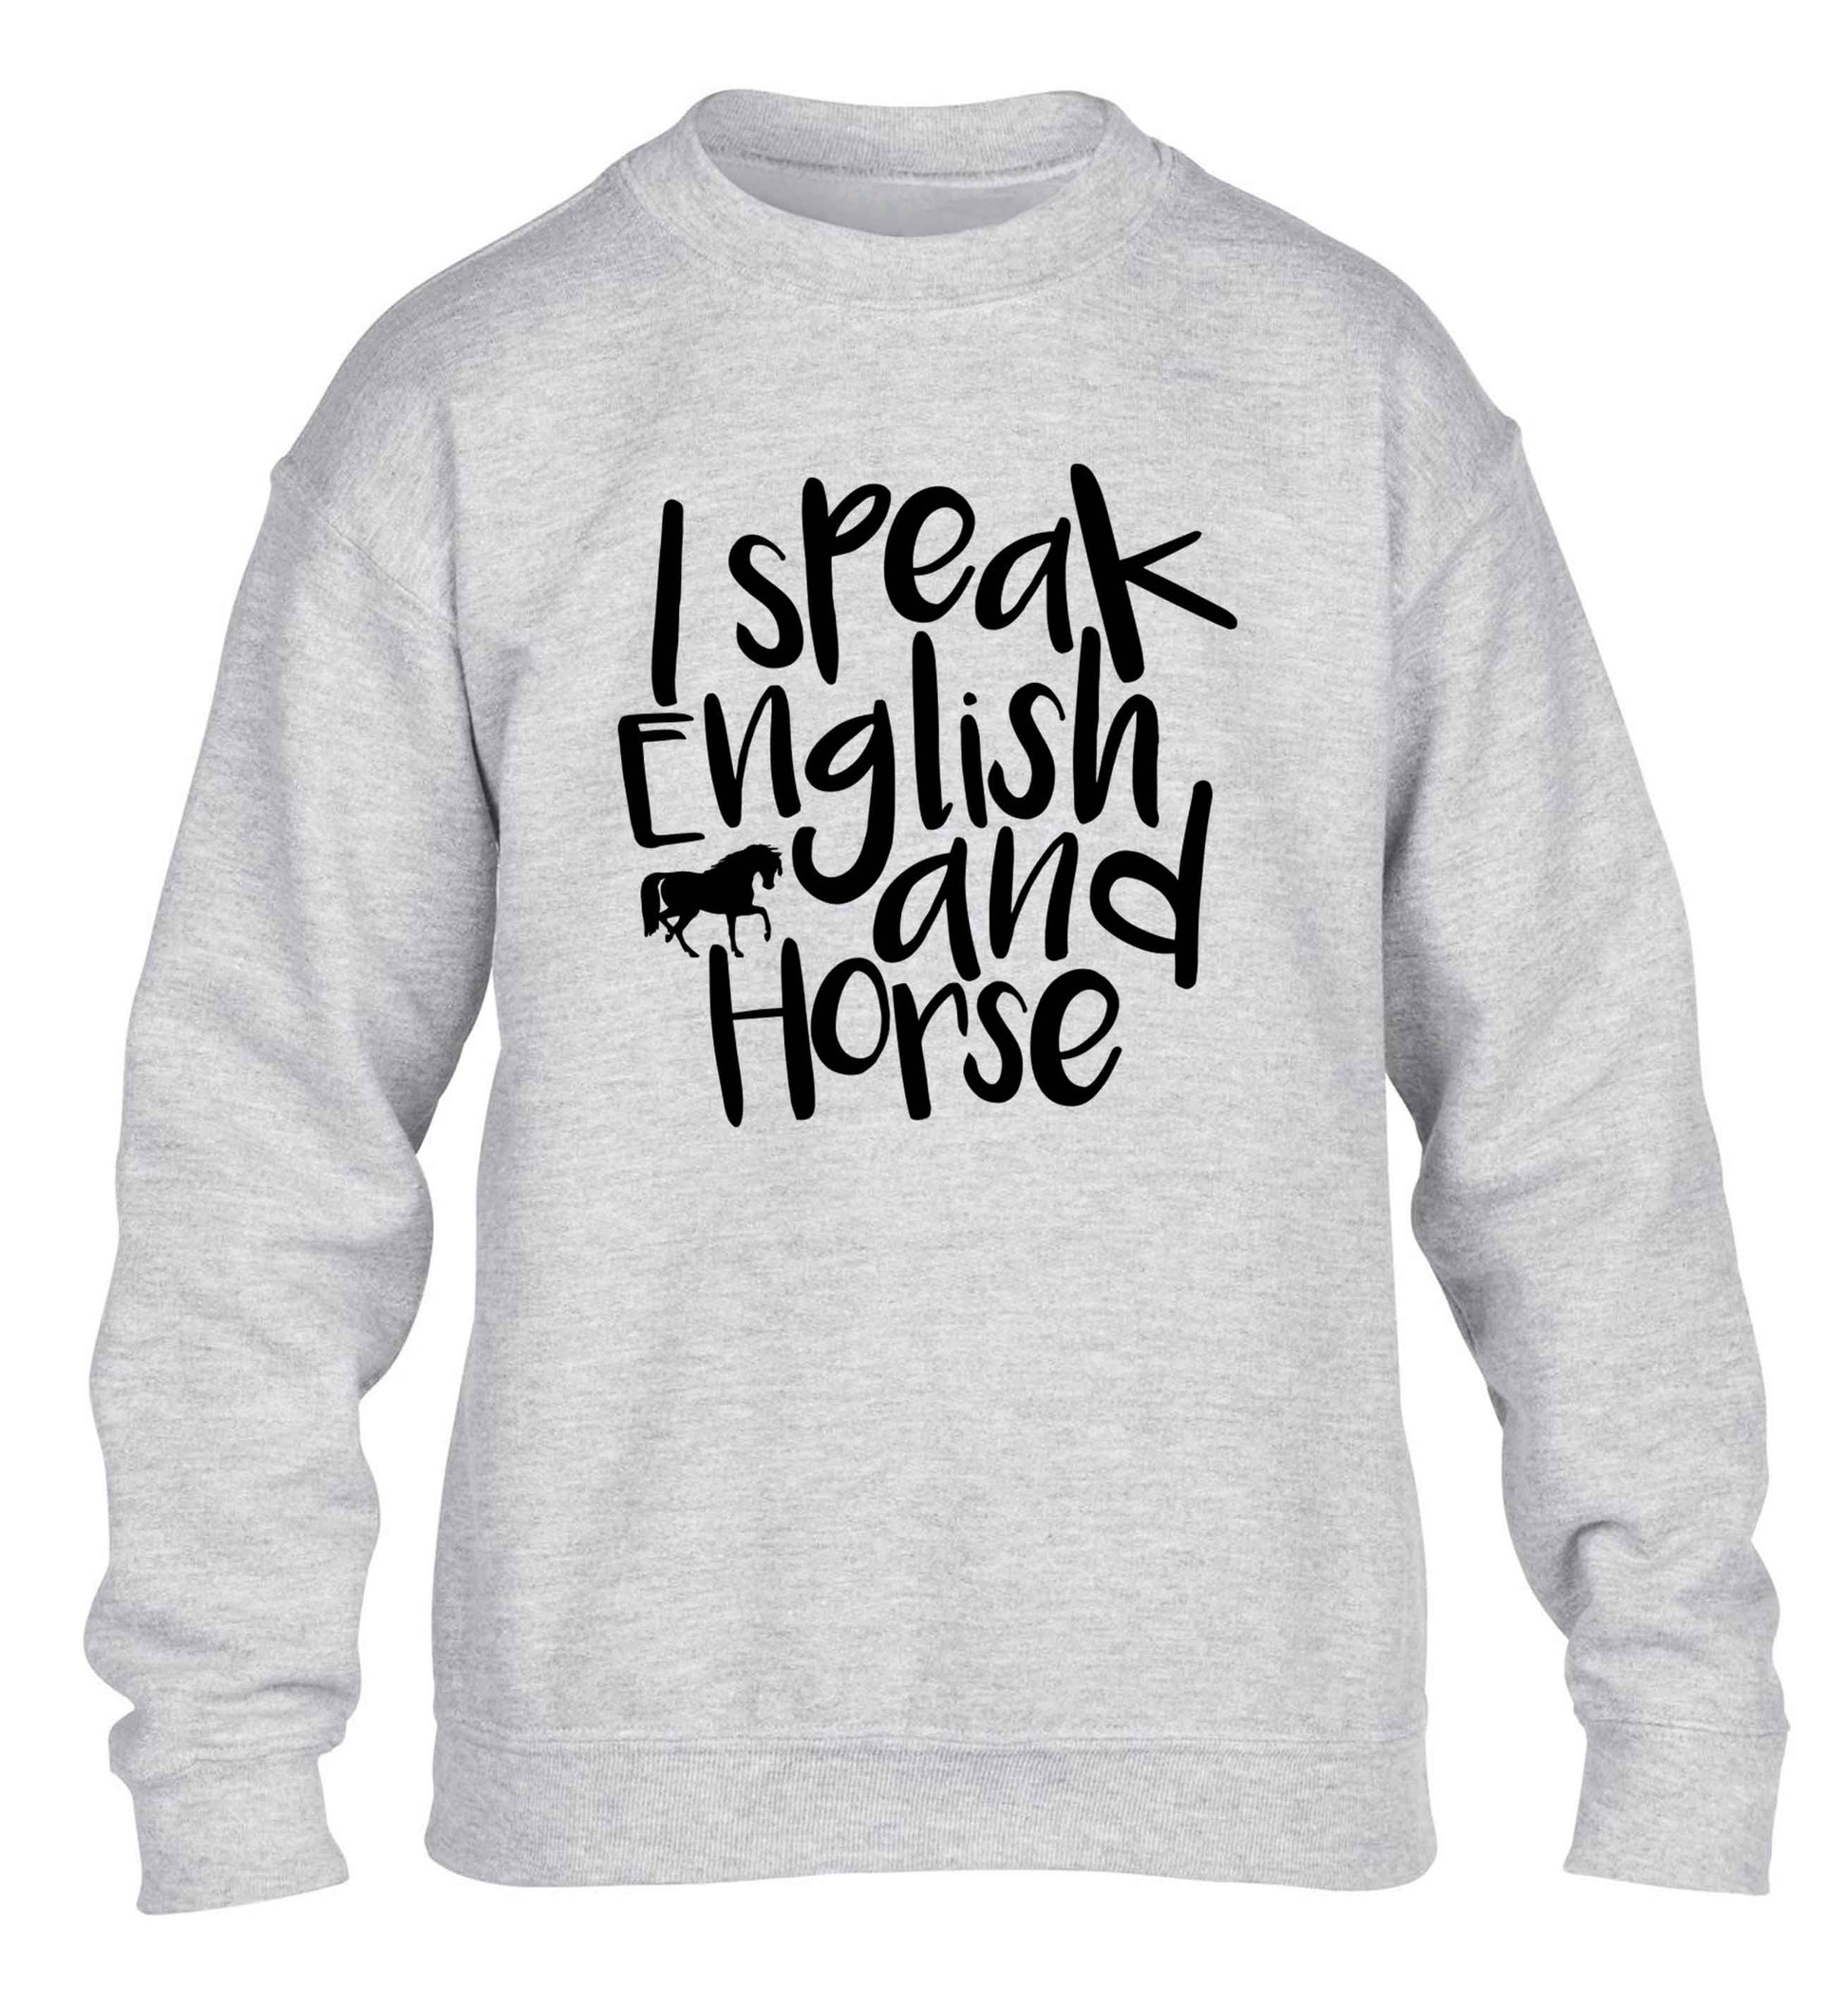 I speak English and horse children's grey sweater 12-13 Years